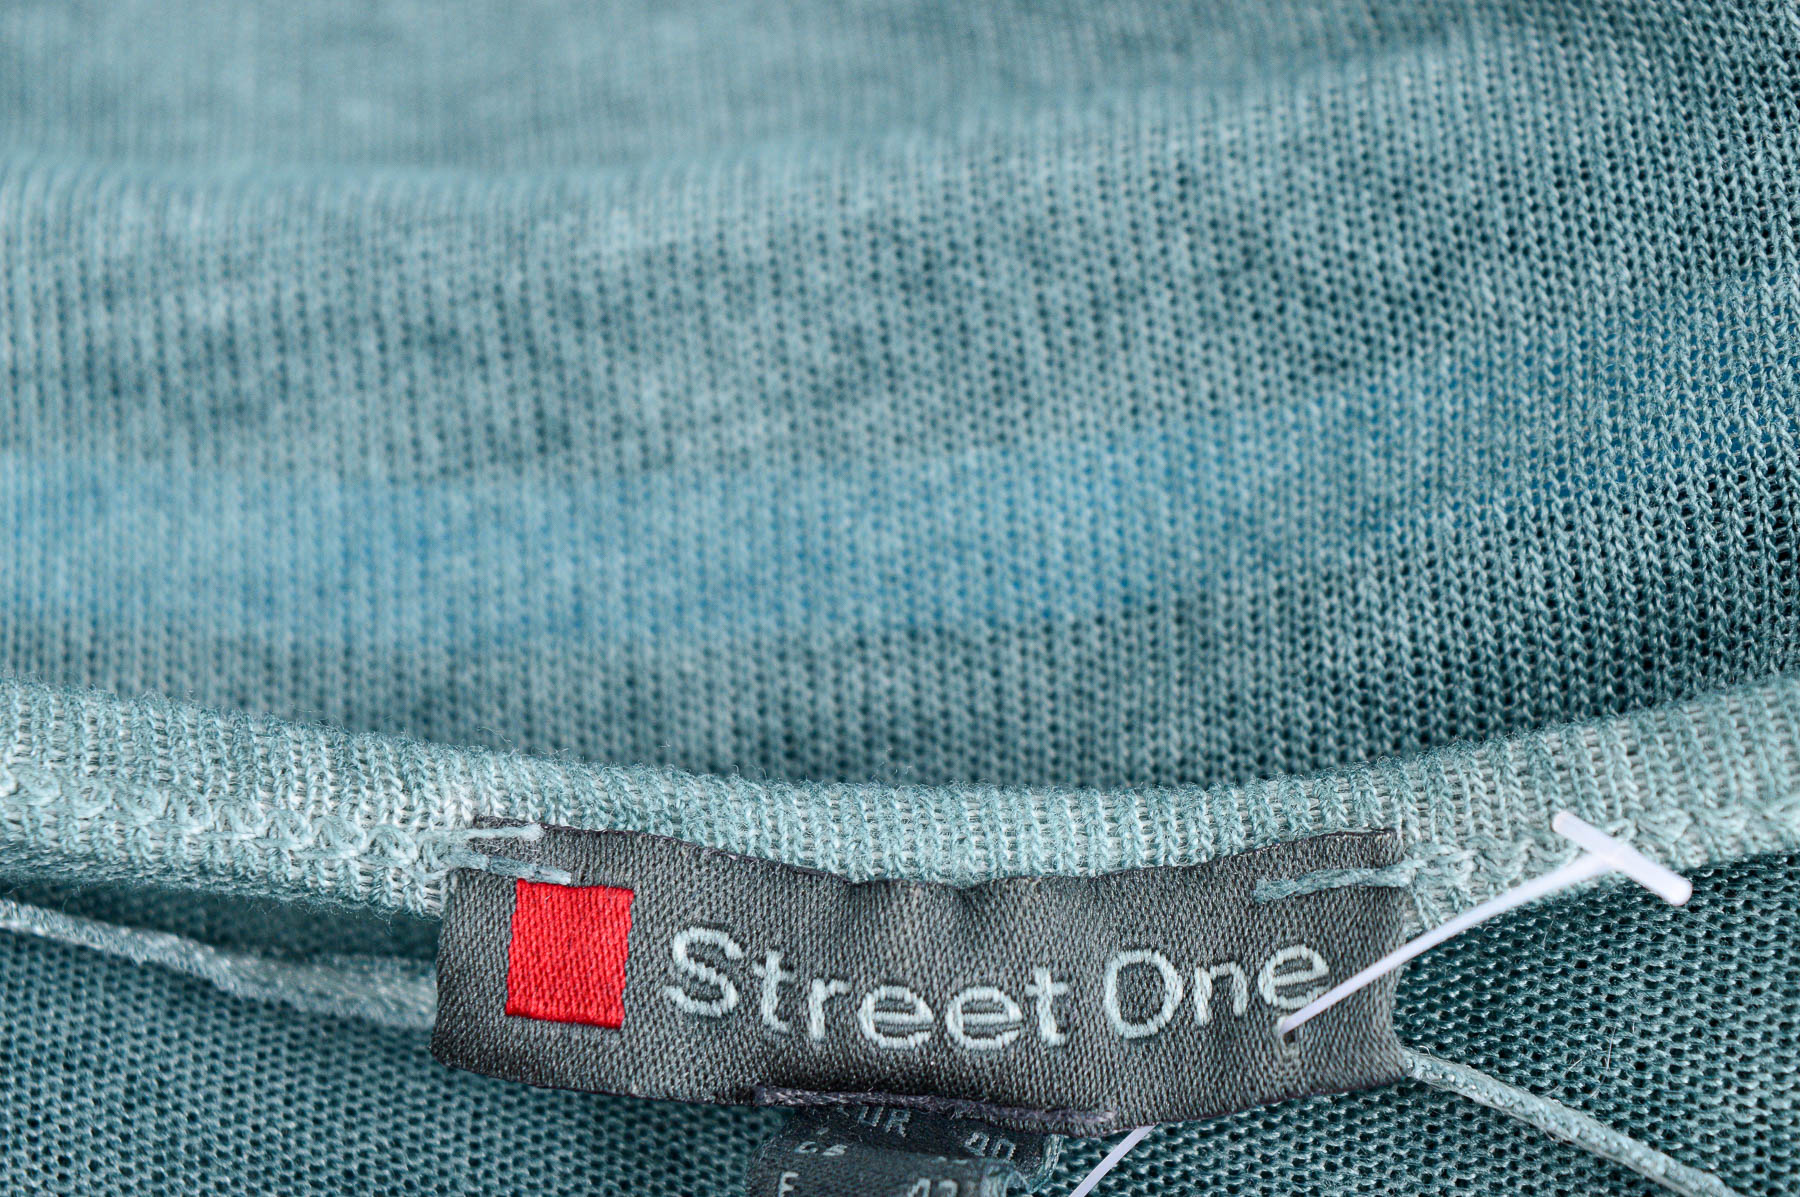 Cardigan / Jachetă de damă - Street One - 2